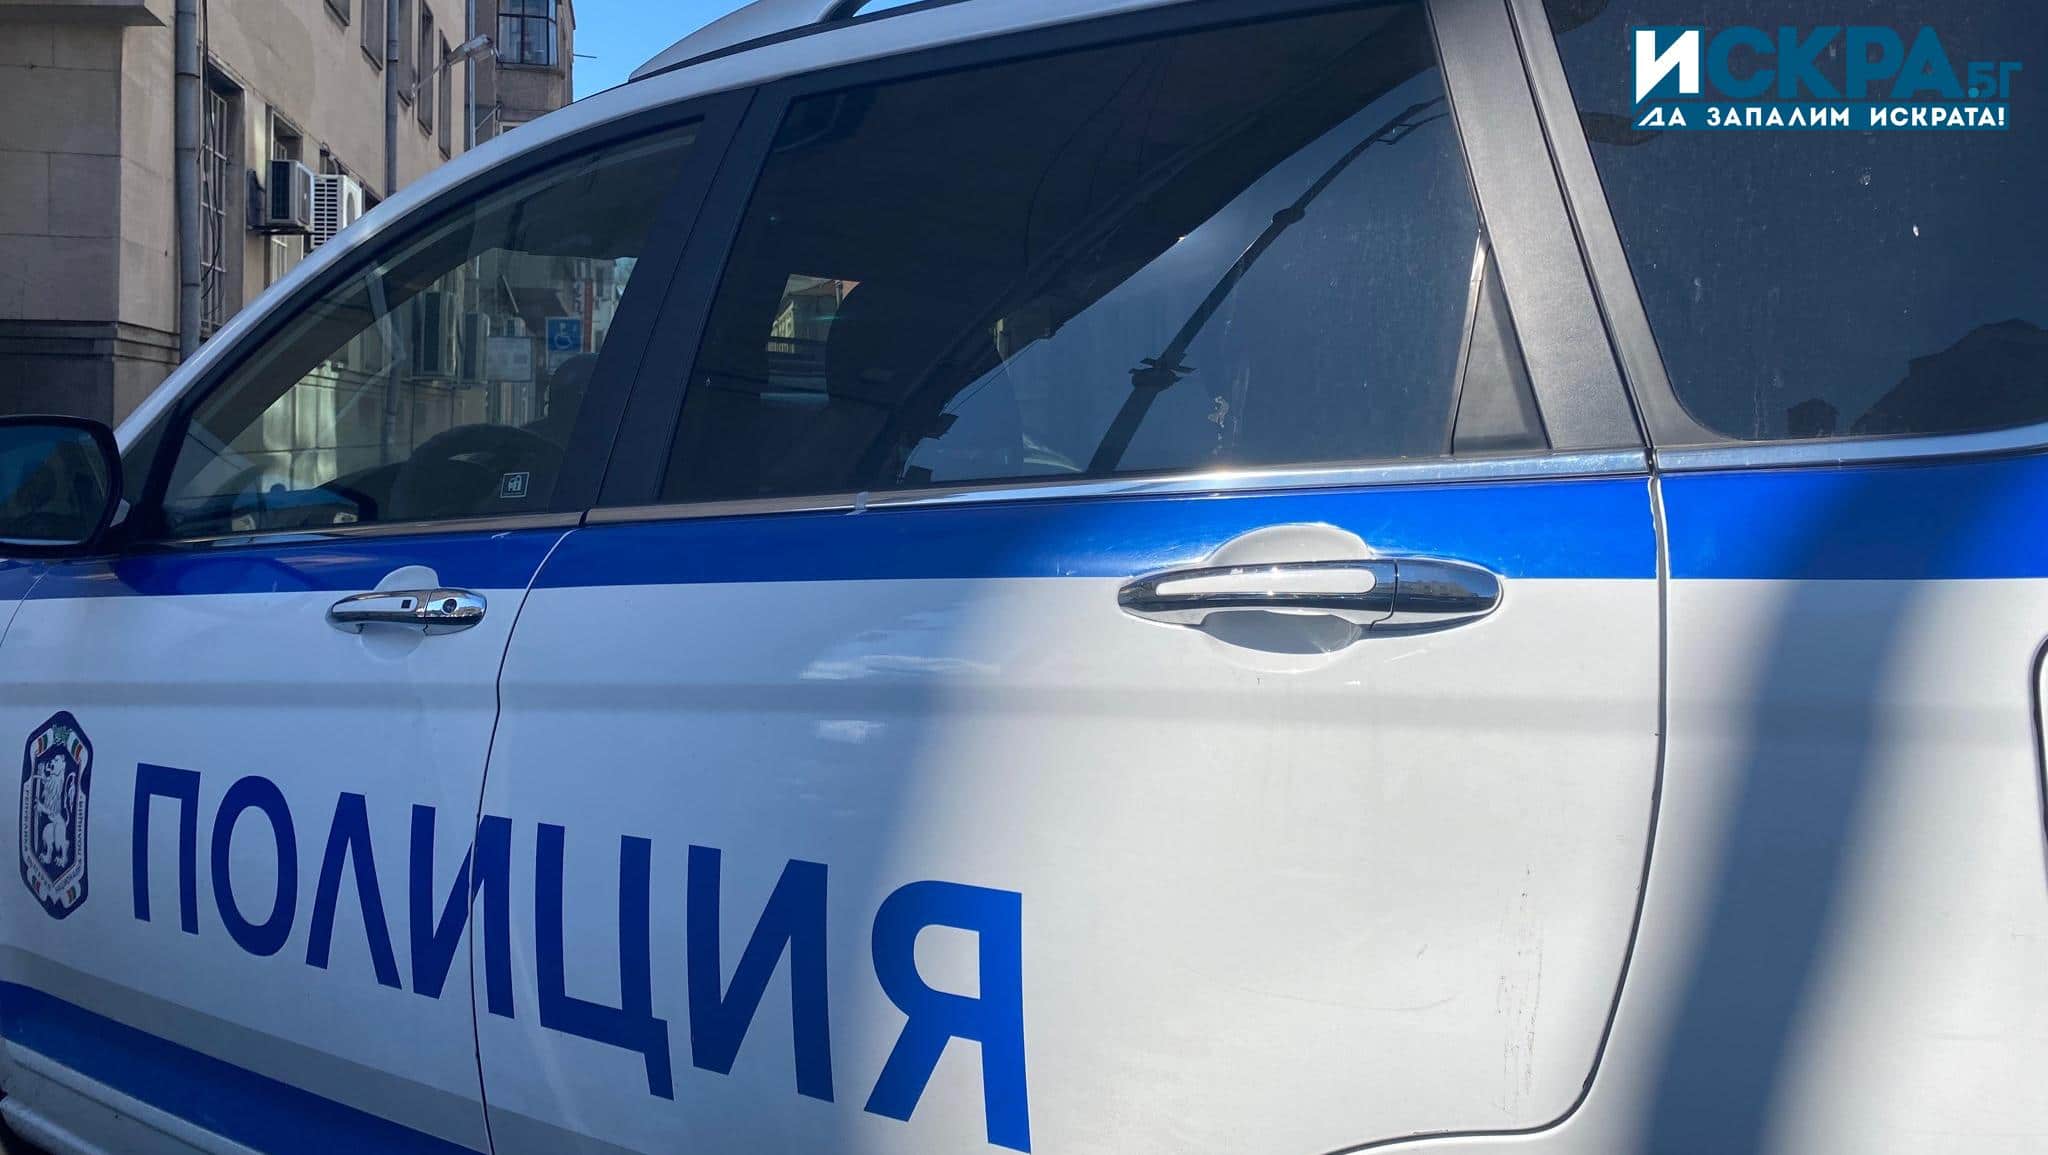 7 мъже са задържани в Районното управление в Момчилград на